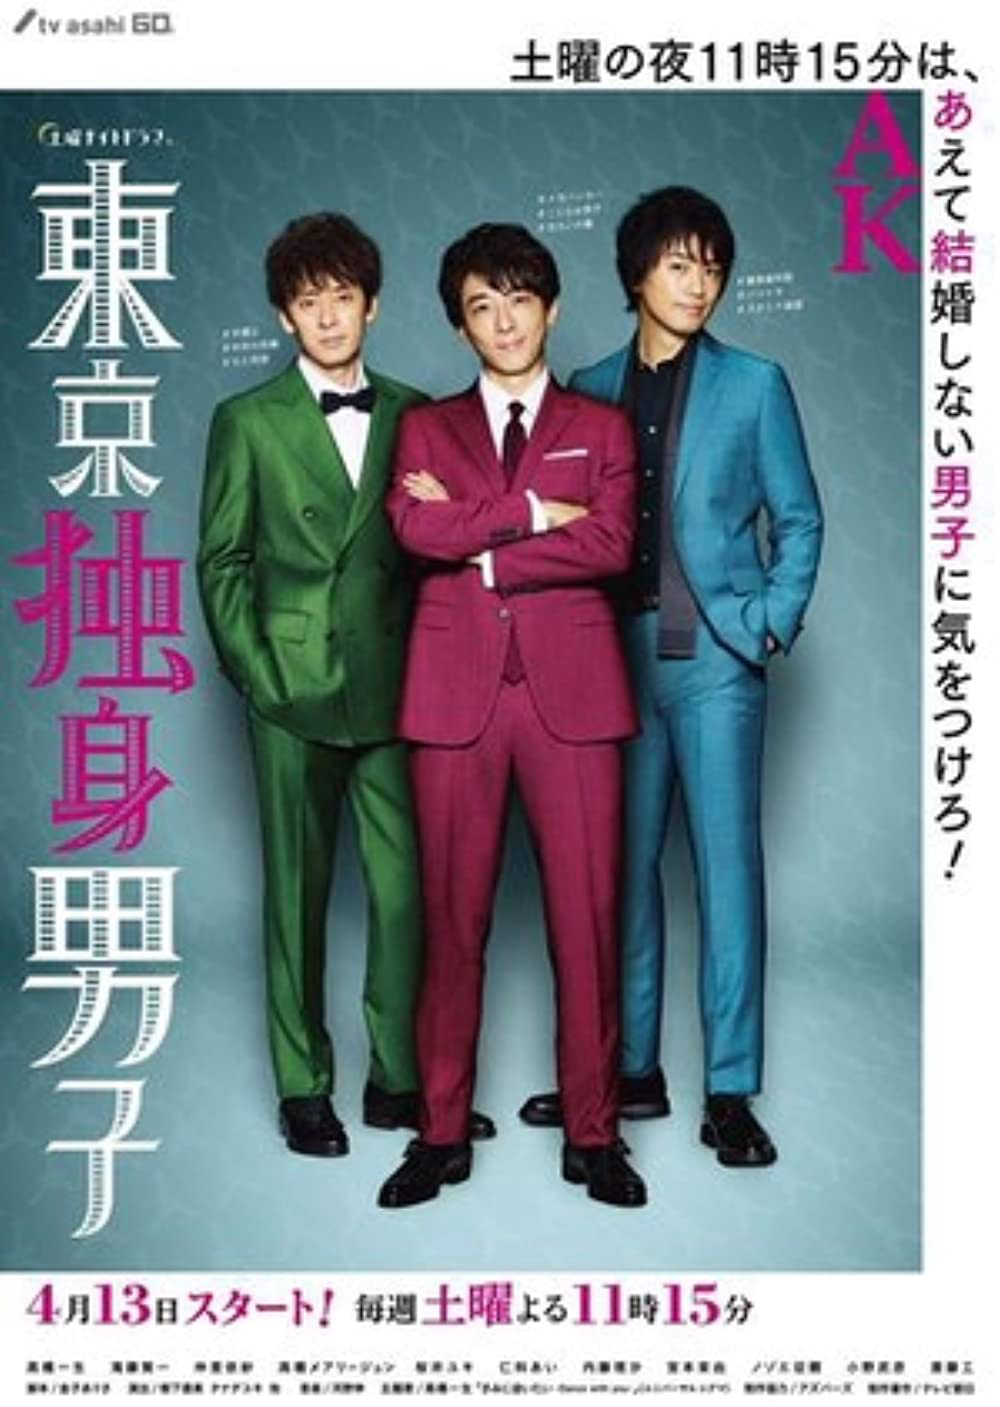 Xem Phim Ba chàng độc thân Tokyo (Tokyo Bachelors)